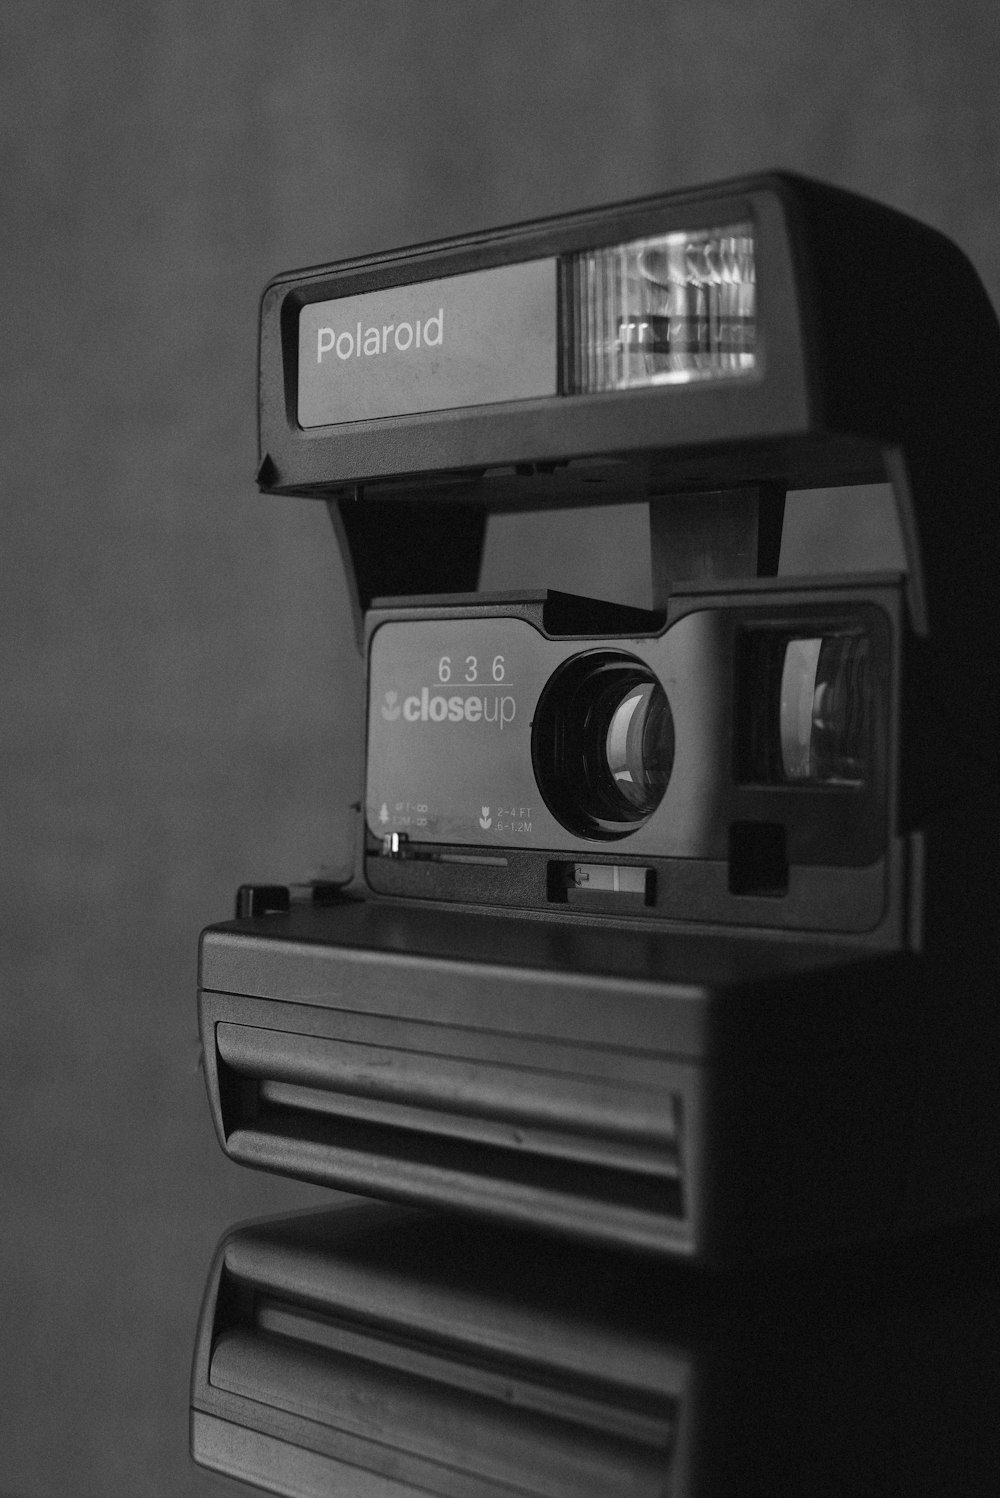 Foto in scala di grigi della fotocamera istantanea Polaroid